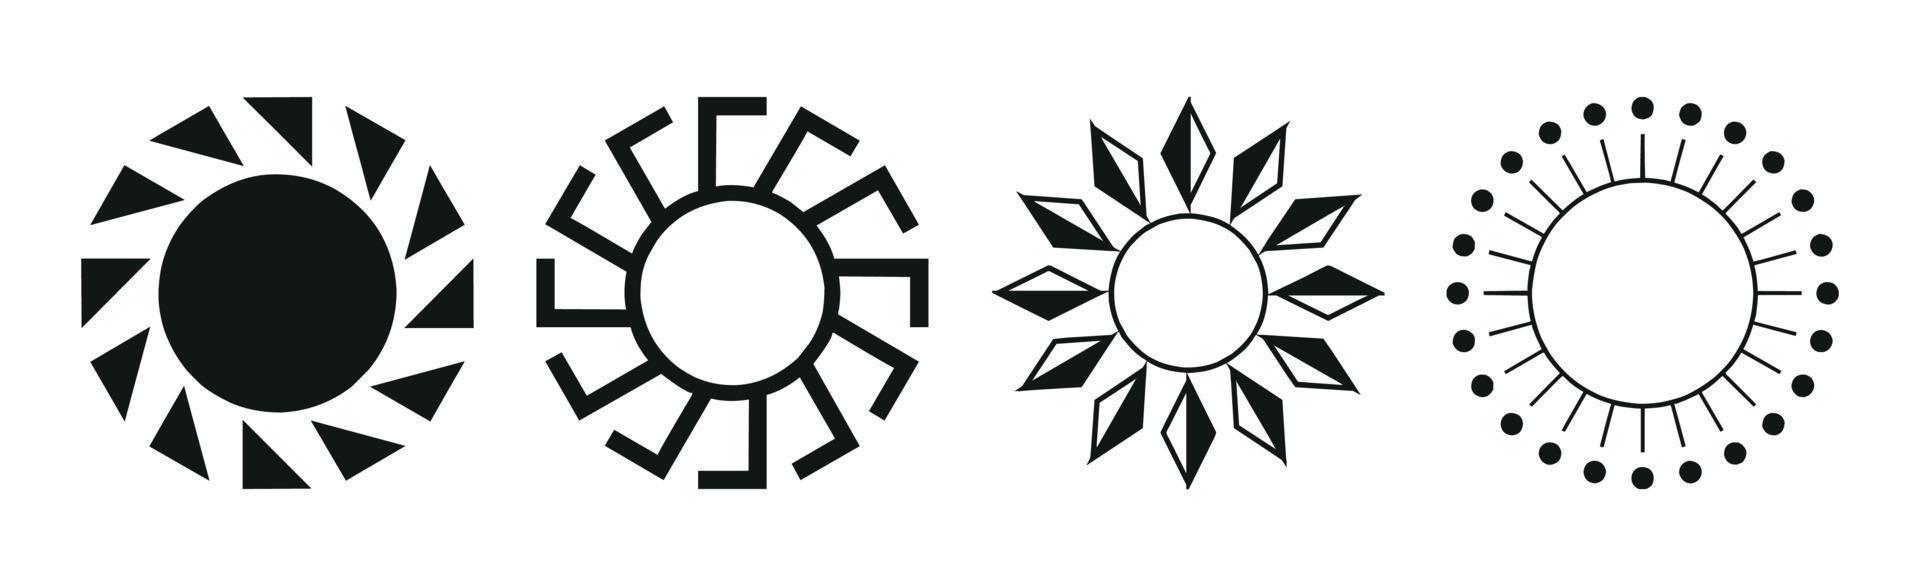 collection de 4 pièces différentes d'abstraction de soleil noir sur fond blanc - vecteur